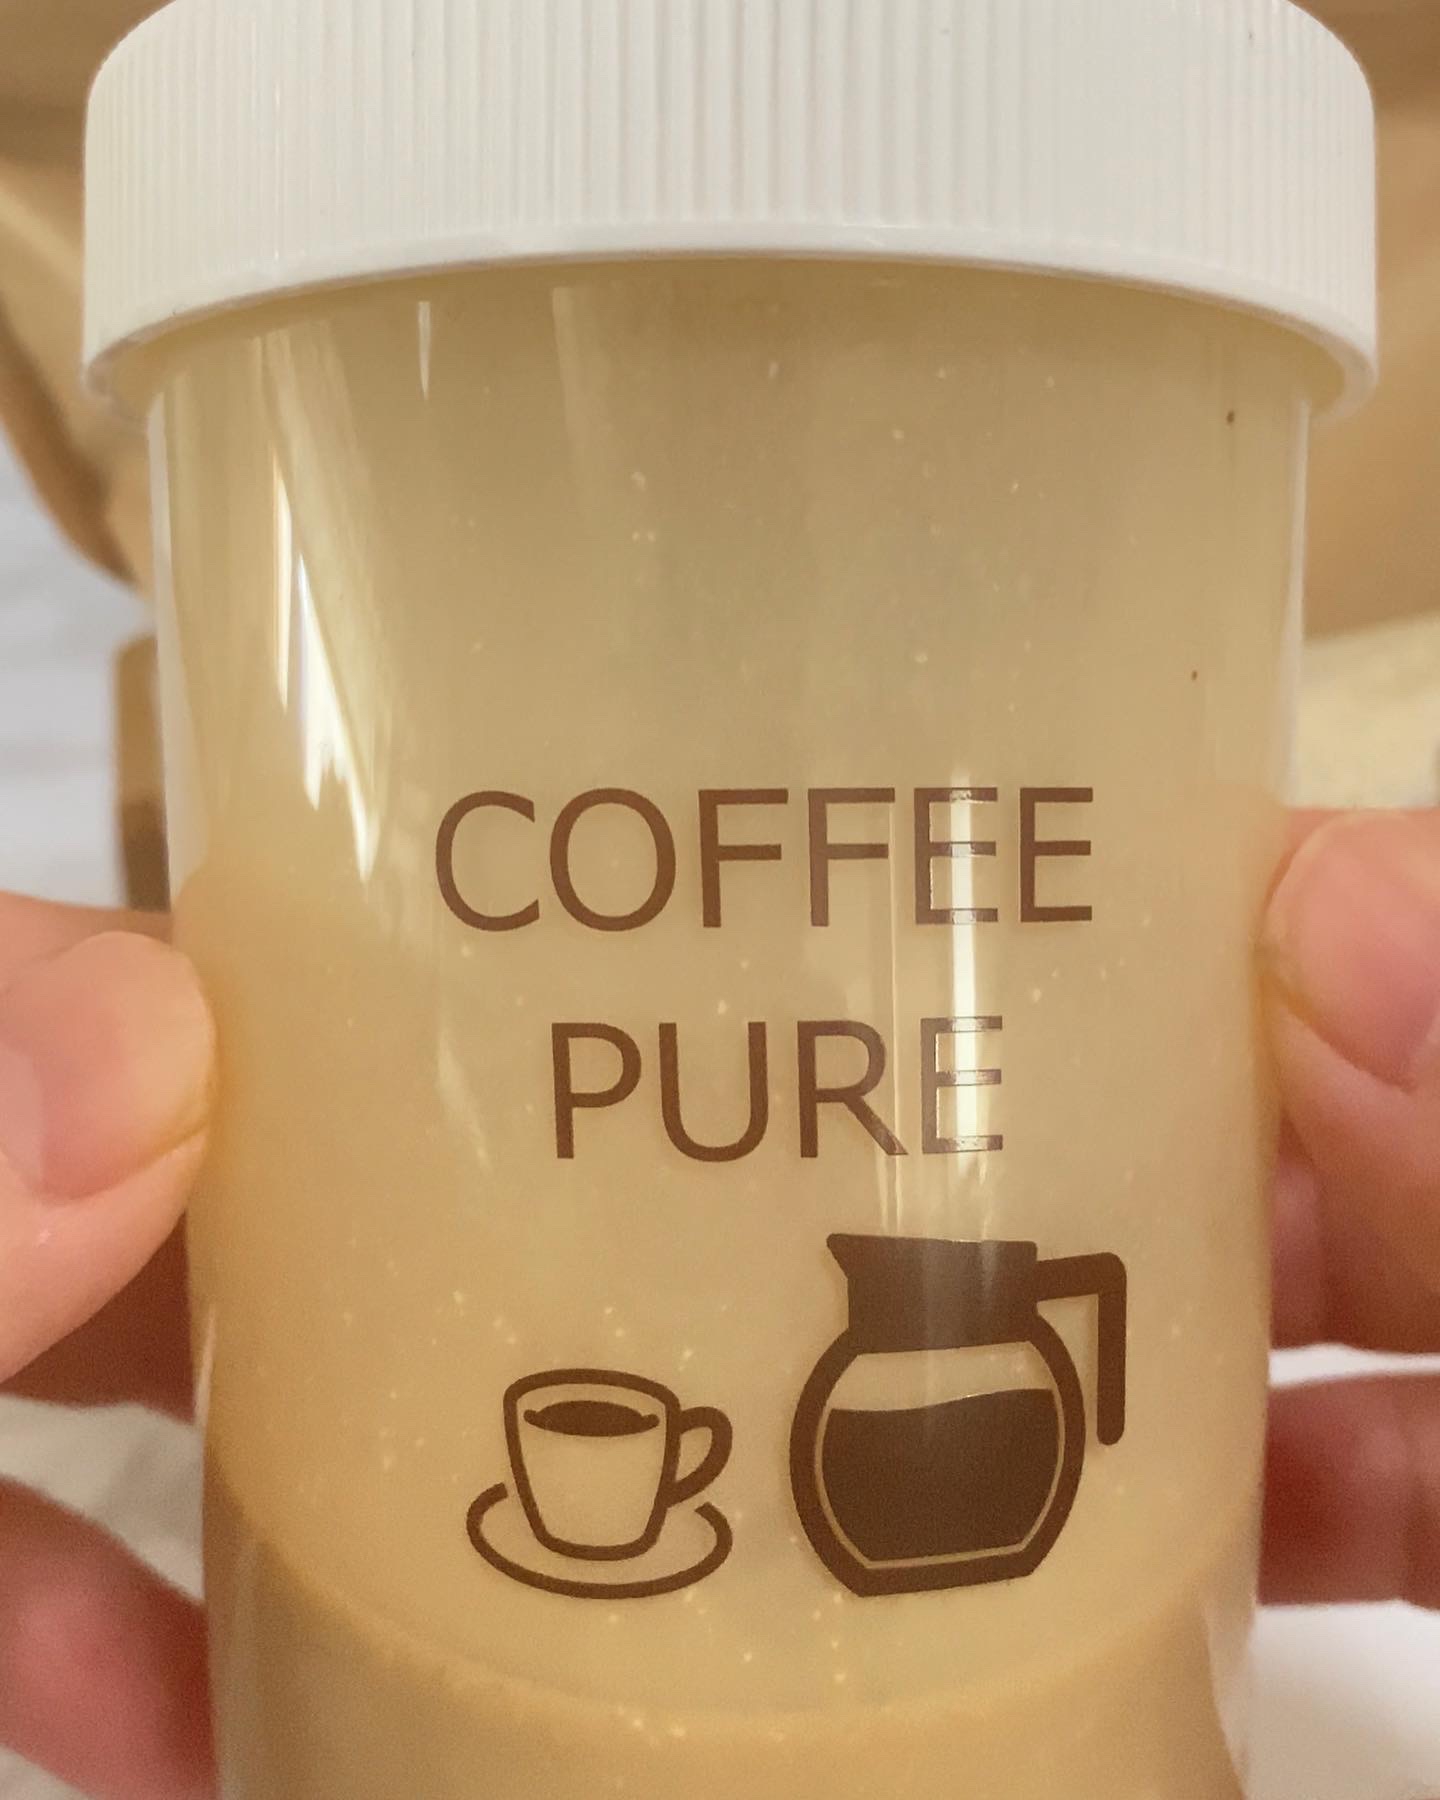 matcha_pure COFFEE PURE4,860円(税込)を使ったマイピコブーさんのクチコミ画像4